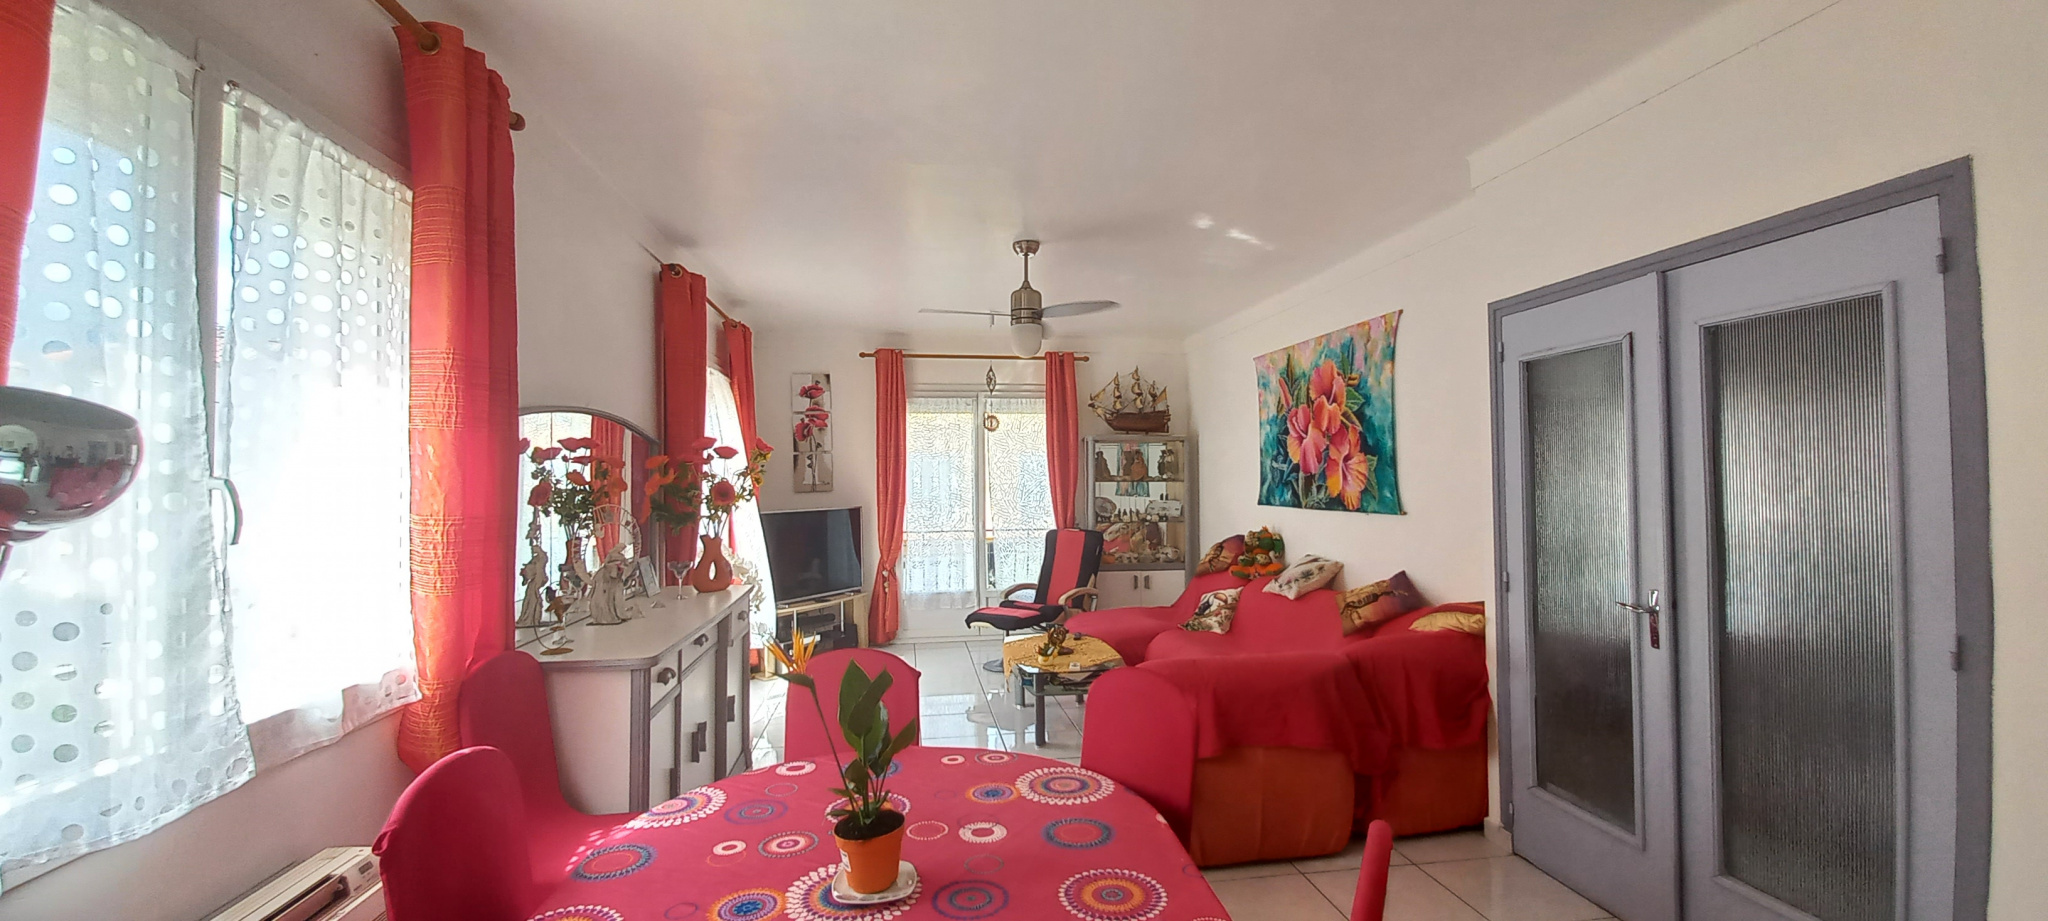 À vendre maison/villa de 140m2 à argelès-sur-mer (66700) - Photo 10'